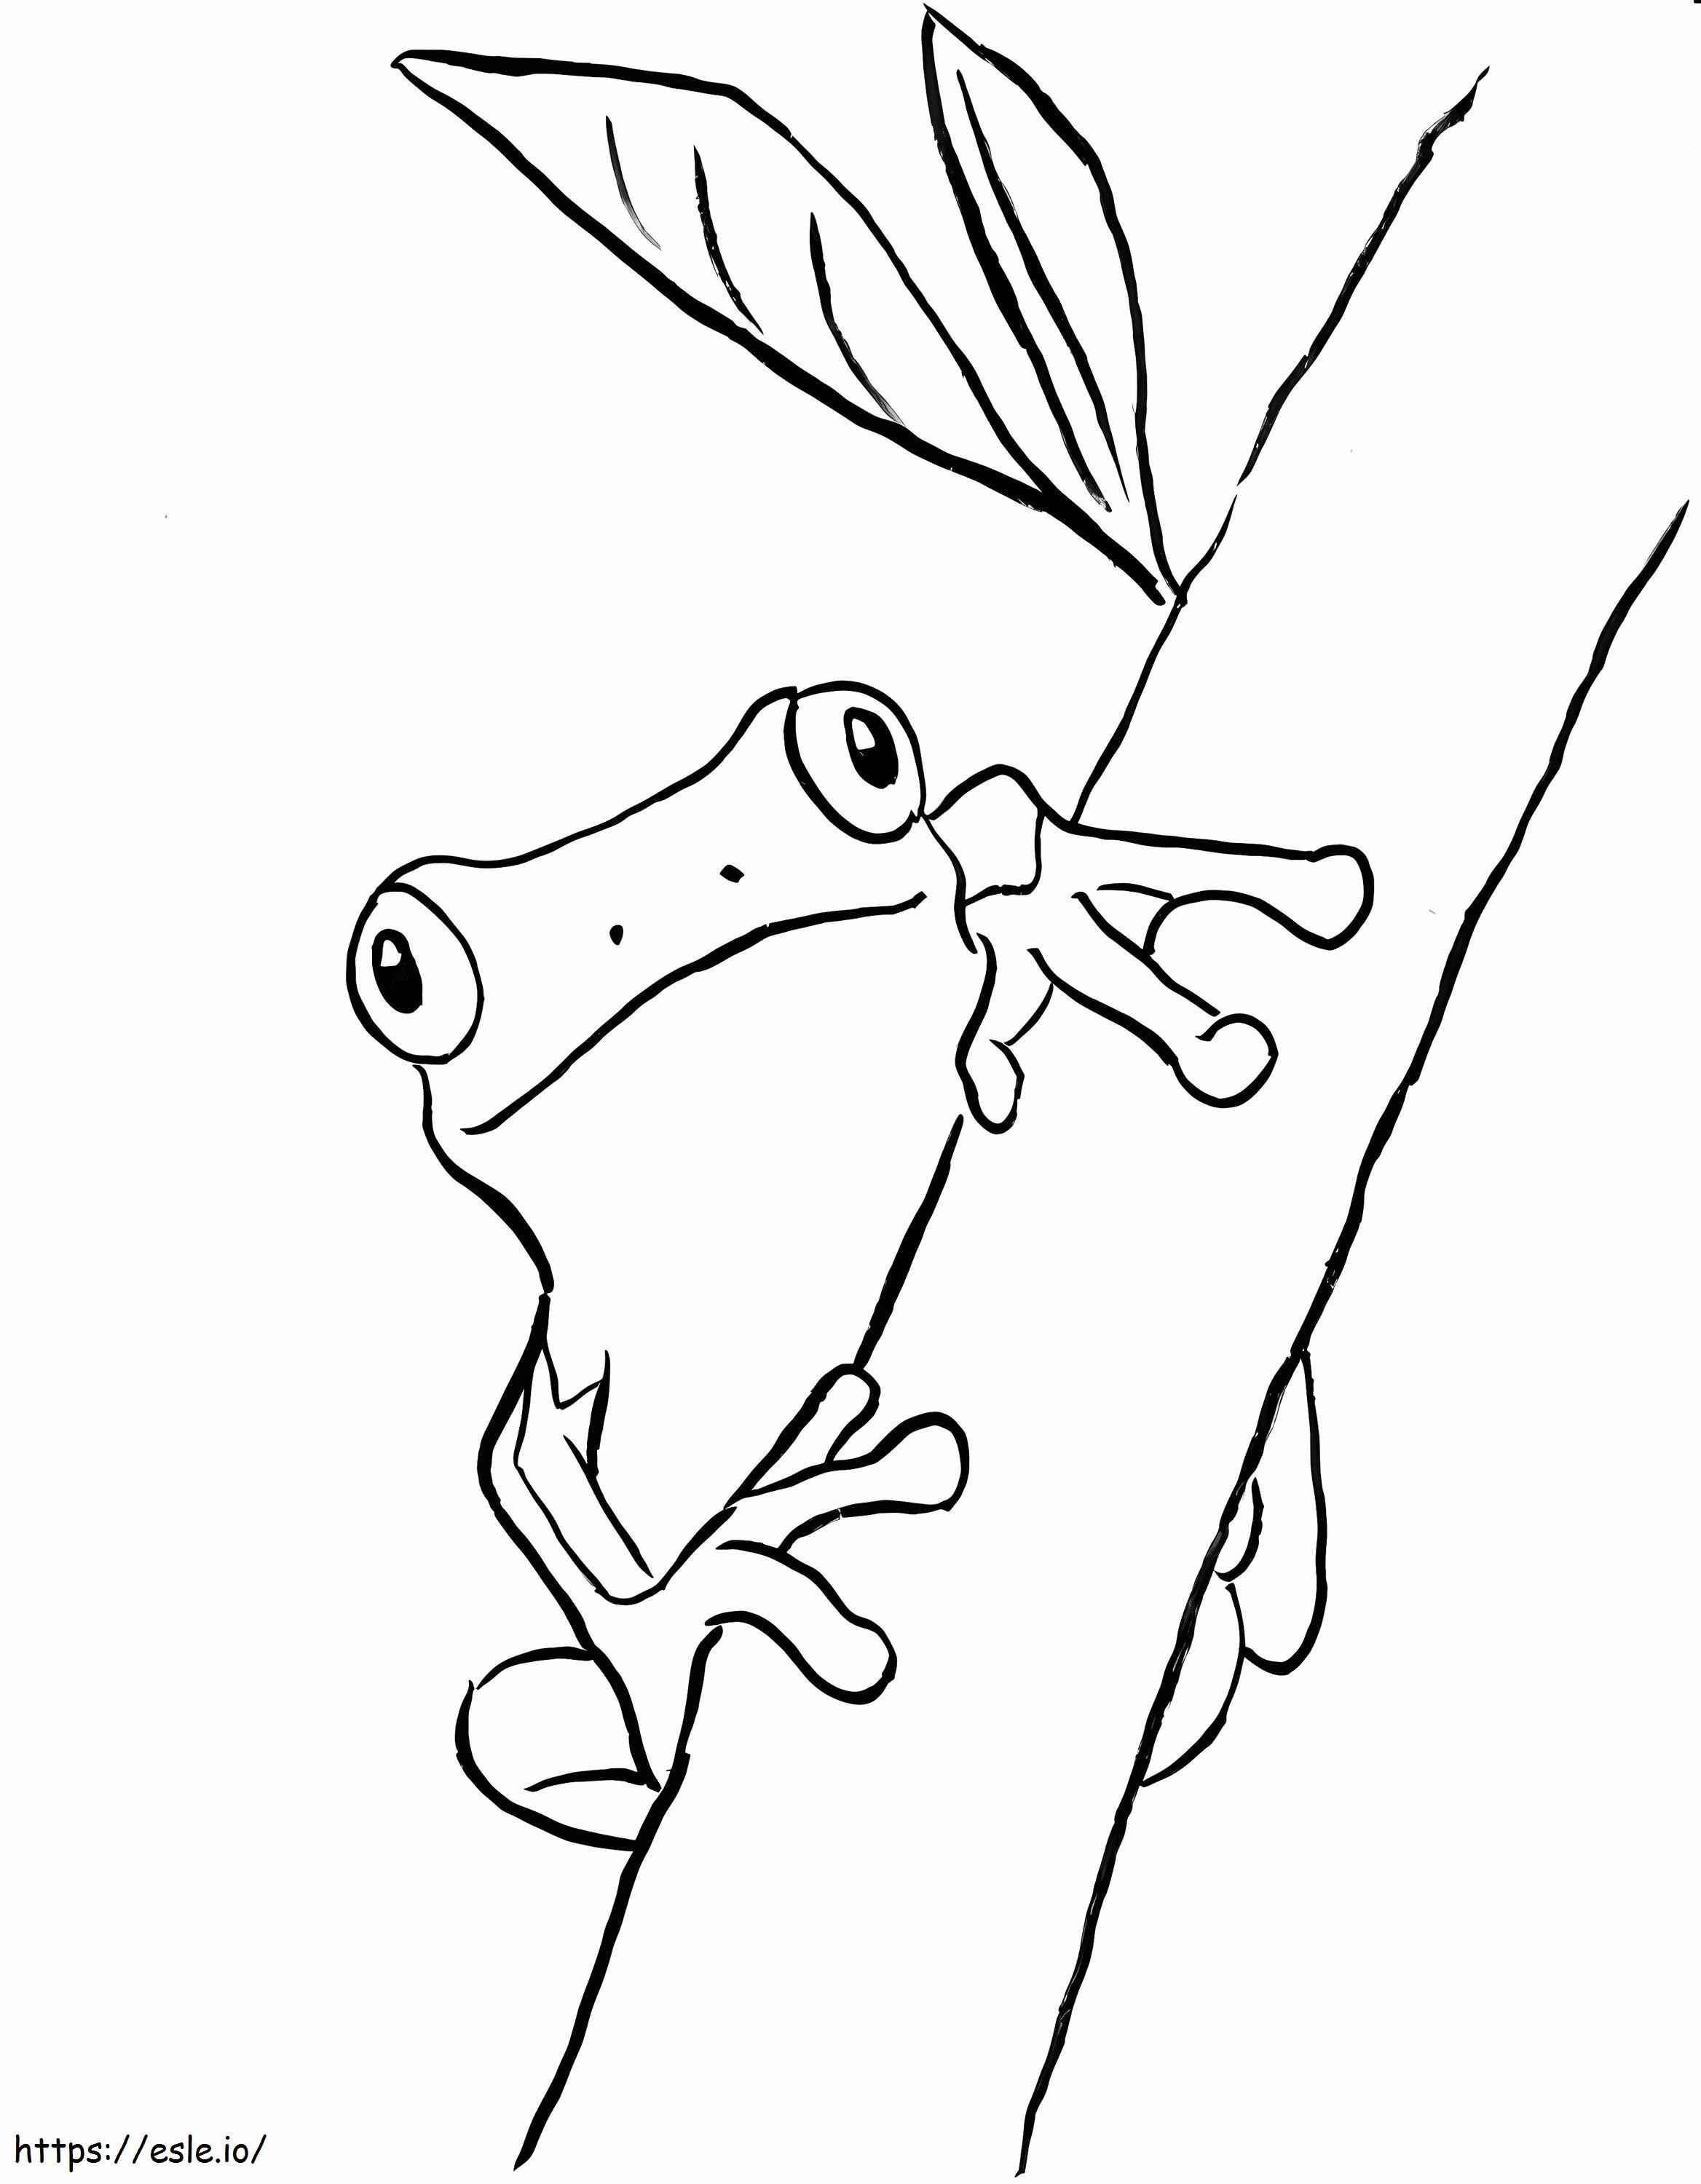 Frosch, der auf einen Ast klettert ausmalbilder